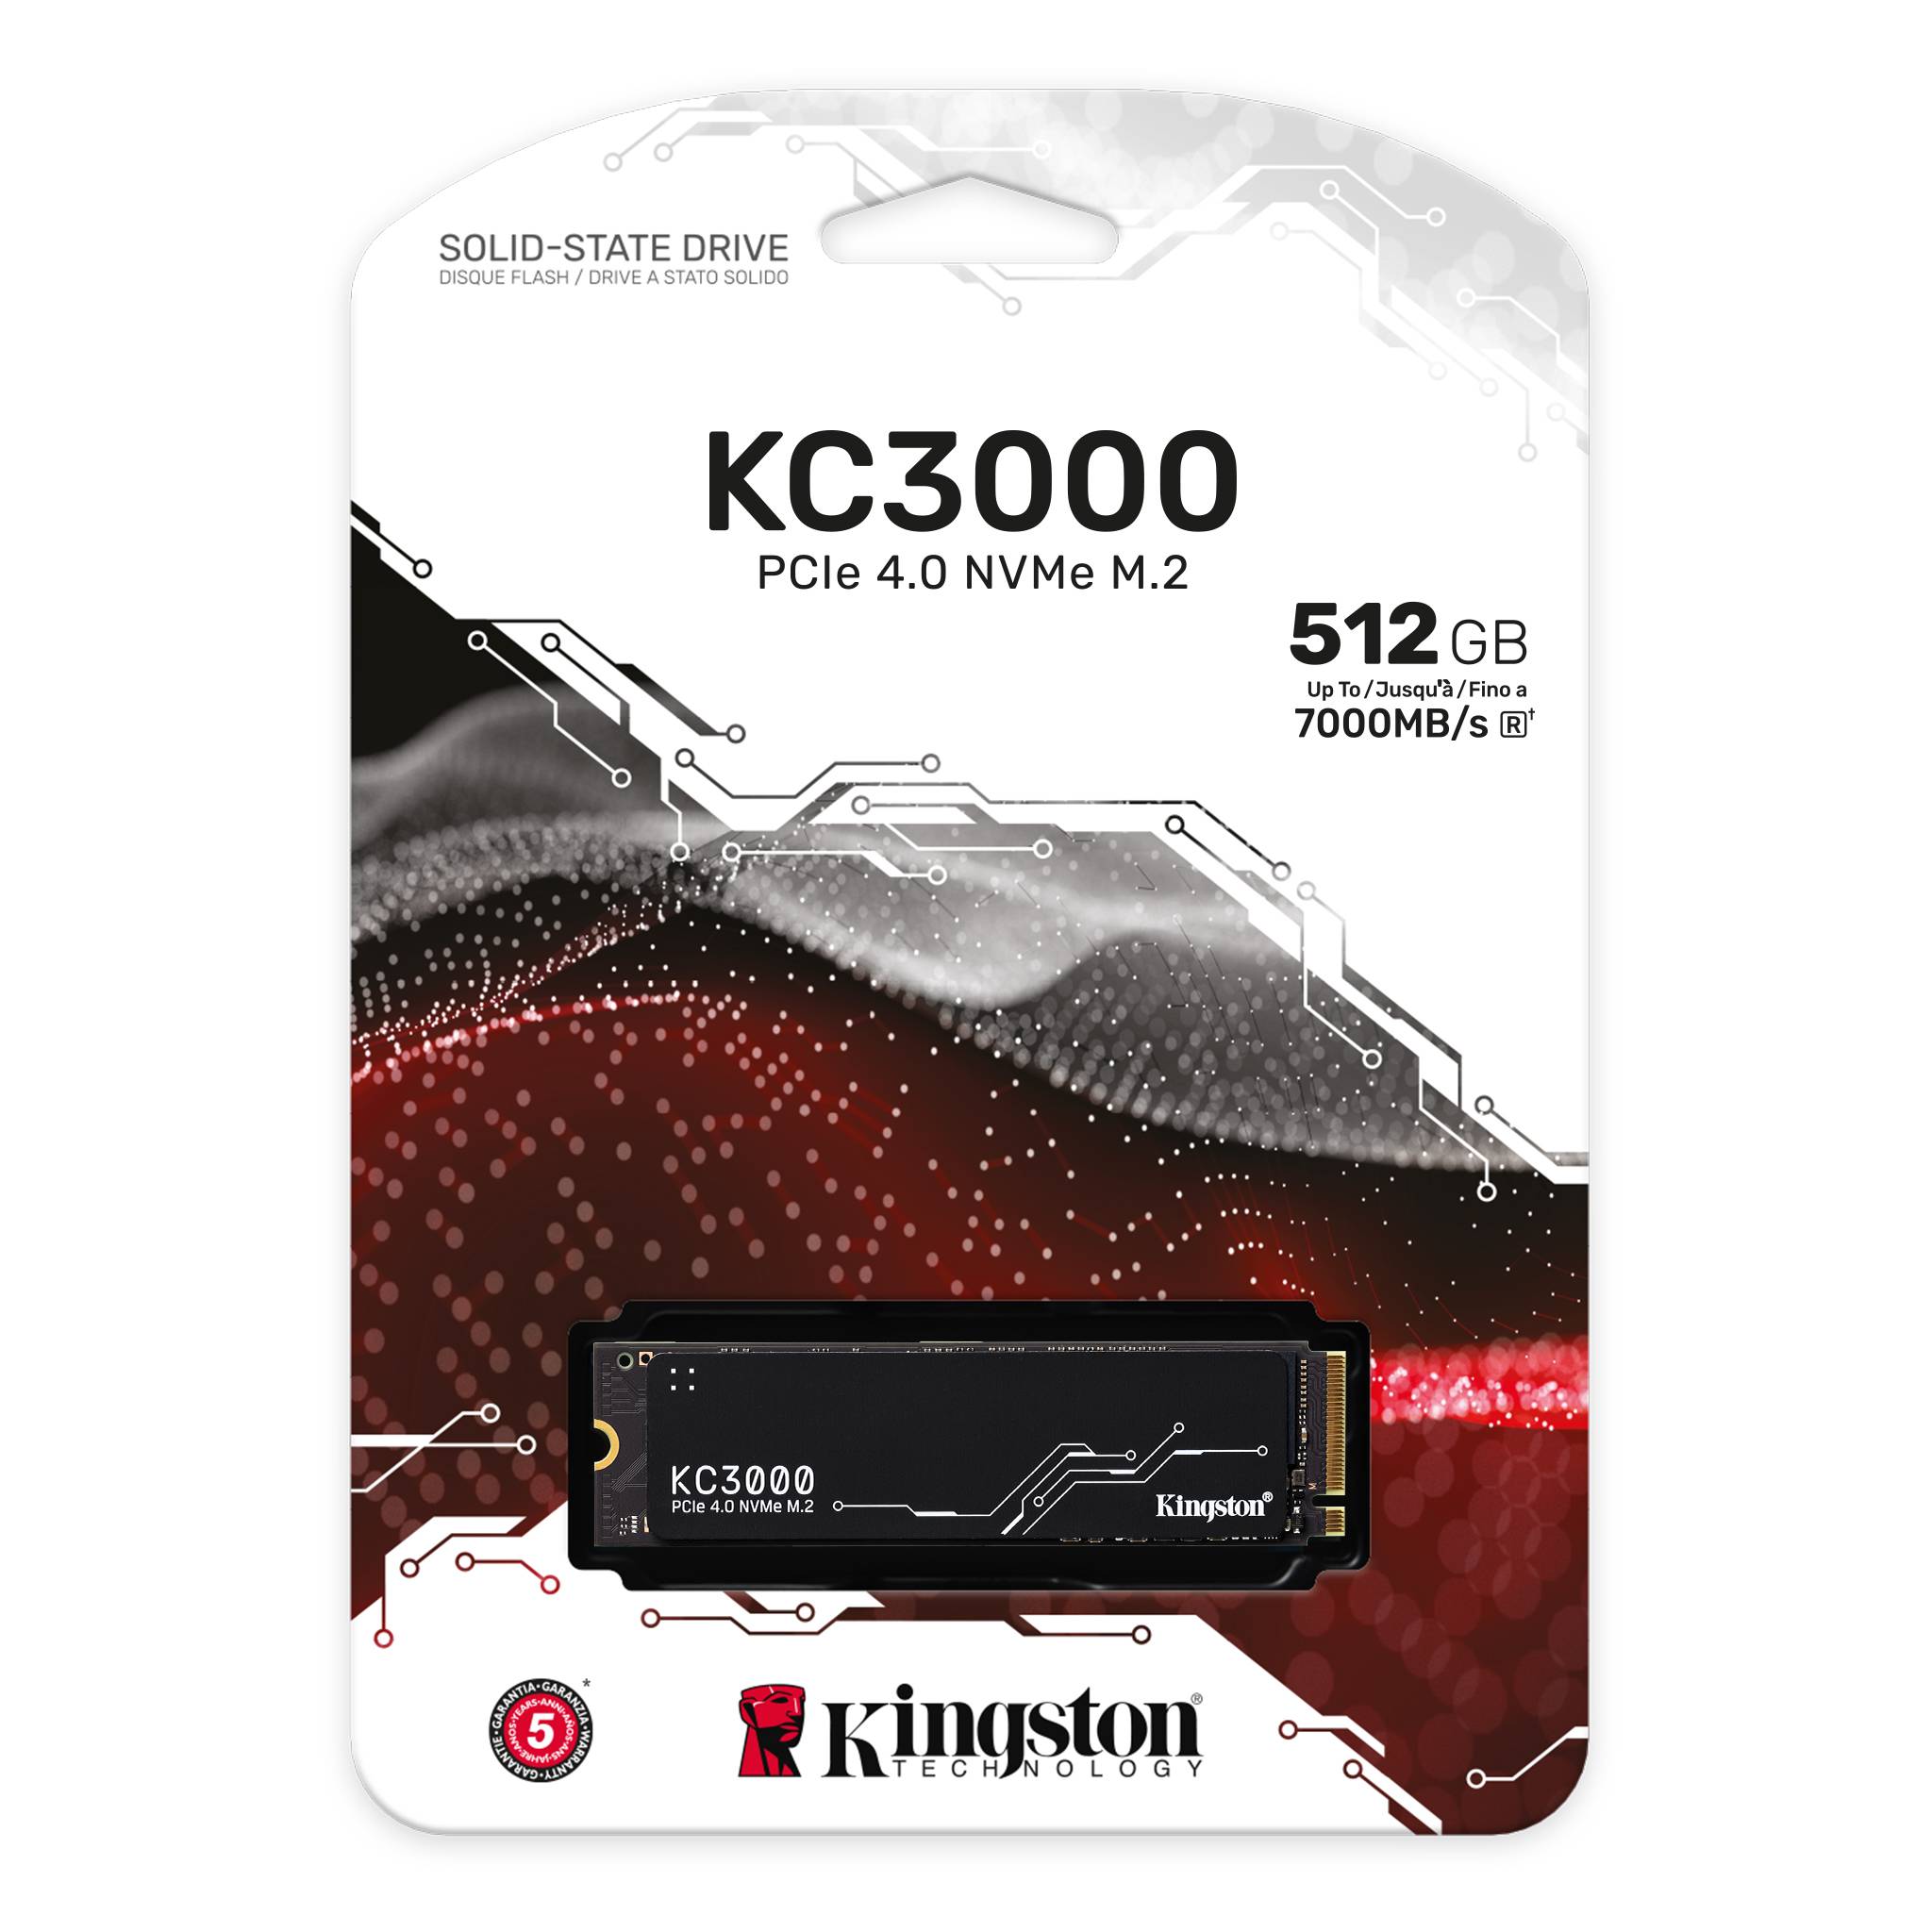 【Kingston 金士頓】KC3000 512GB PCIe 4.0 NVMe M.2 SSD 固態硬碟